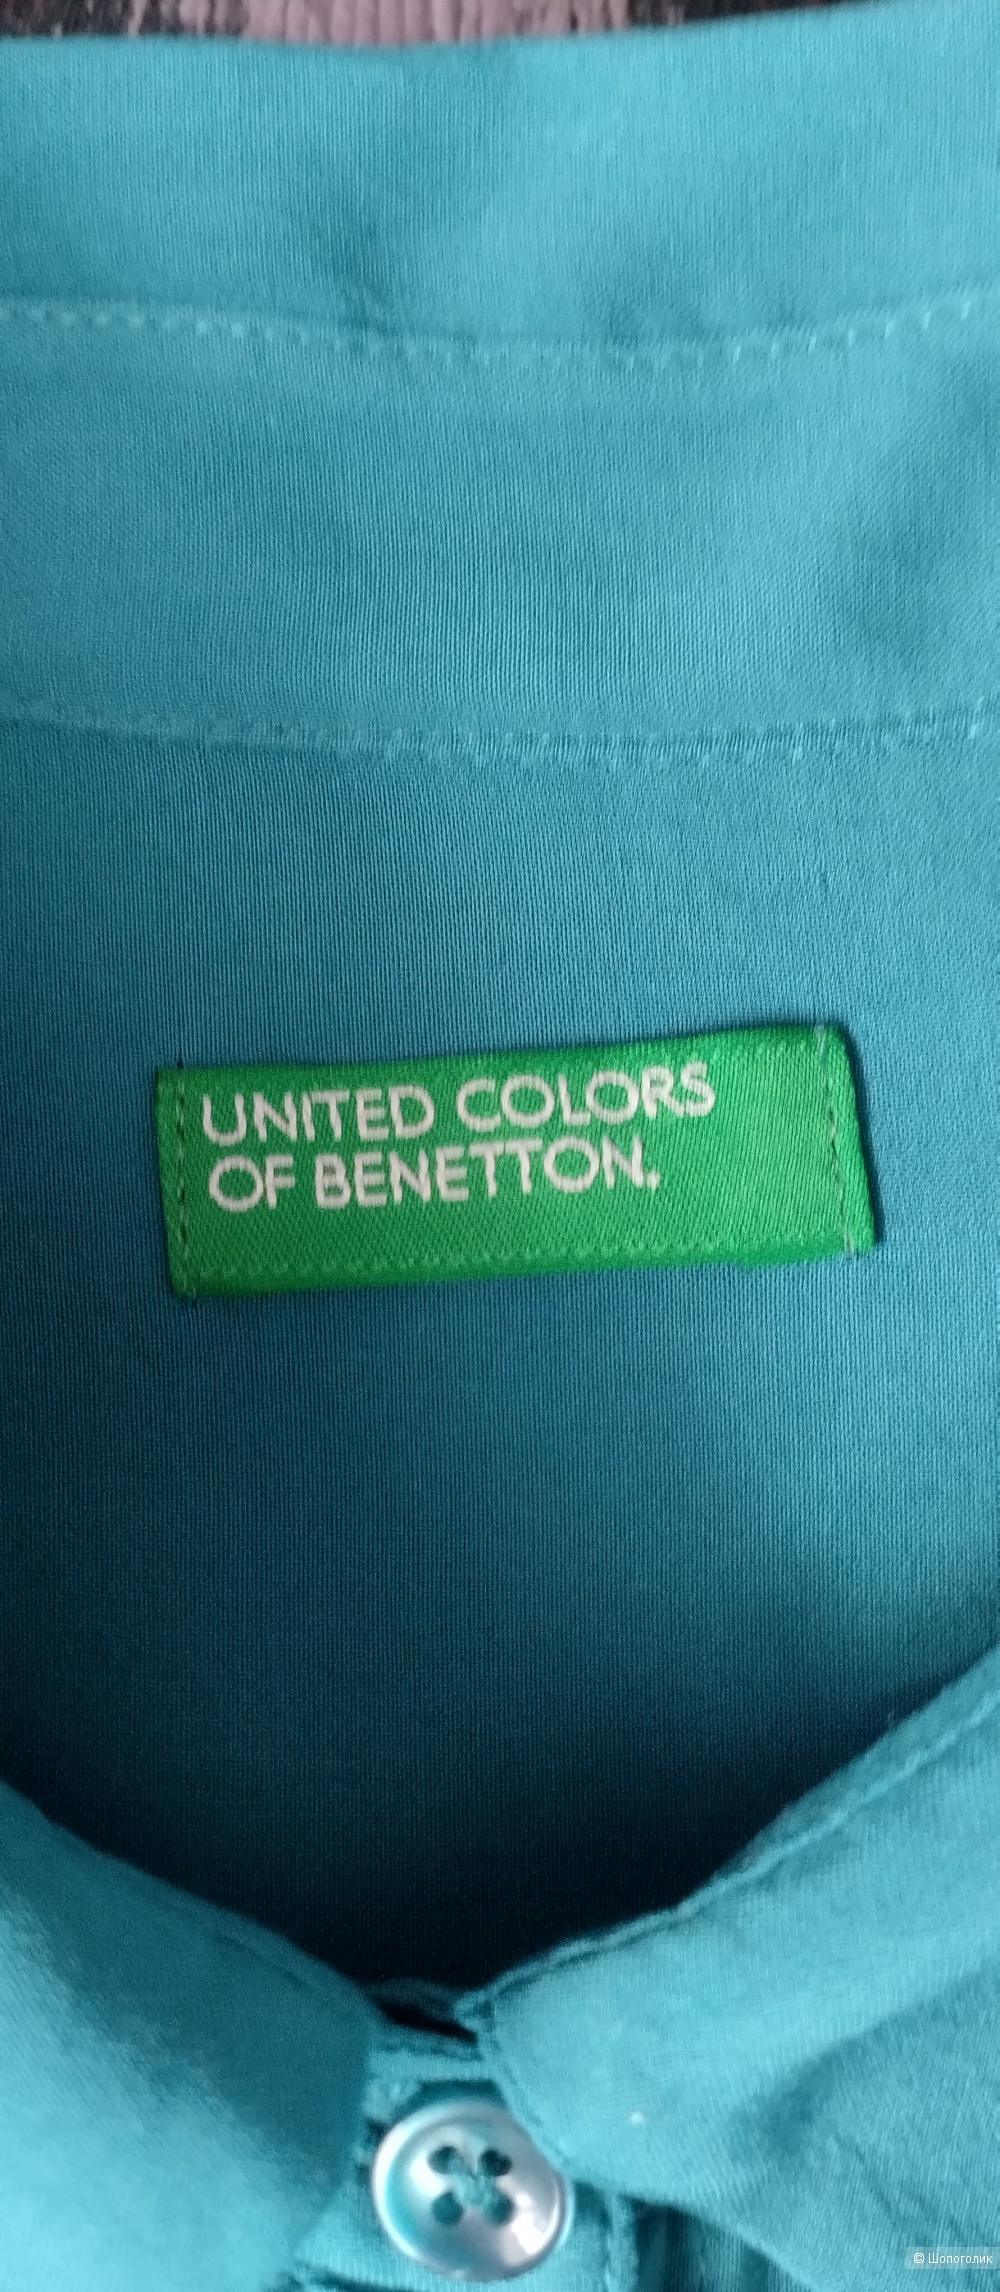 Рубашка женская Benetton, L